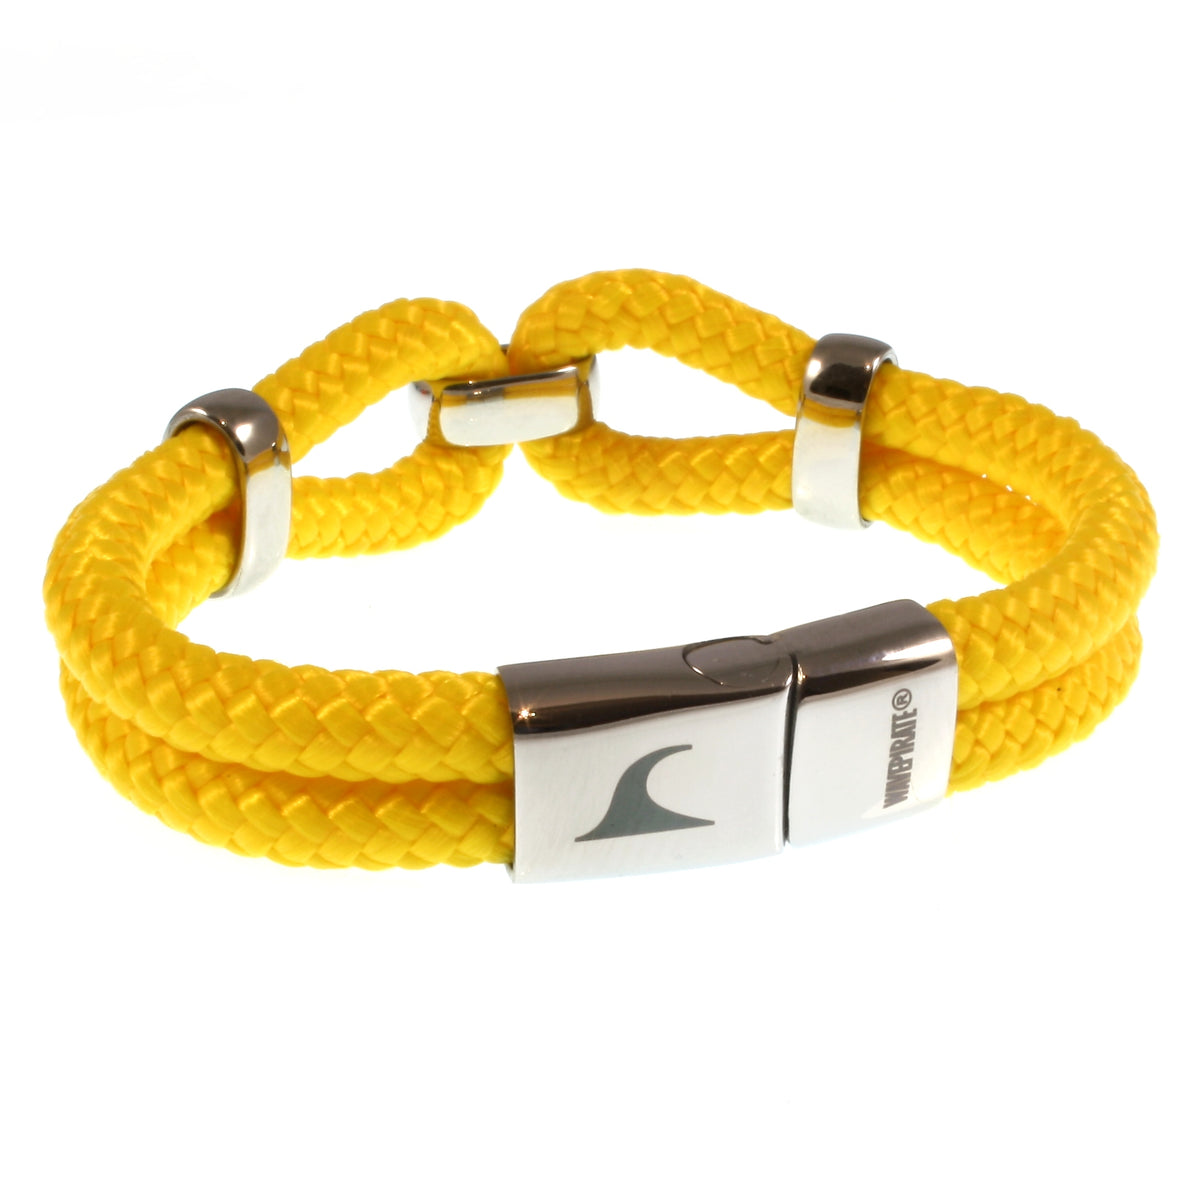 Damen-Segeltau-armband-roma-gelb-geflochten-Edelstahlverschluss-hinten-wavepirate-shop-st